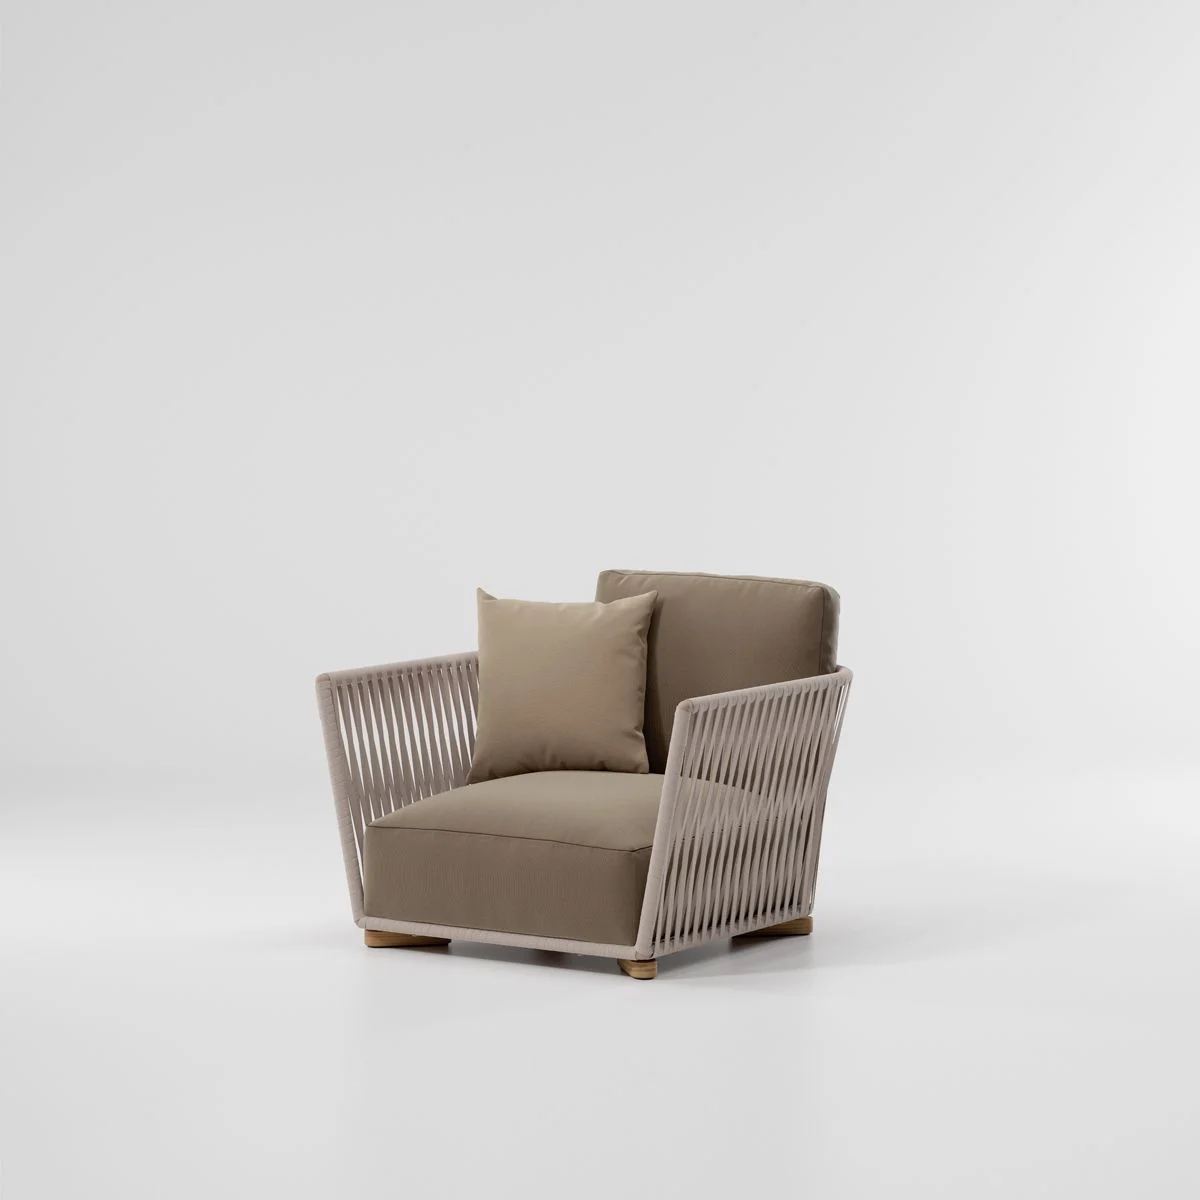 kettal-granbitta-armchair01